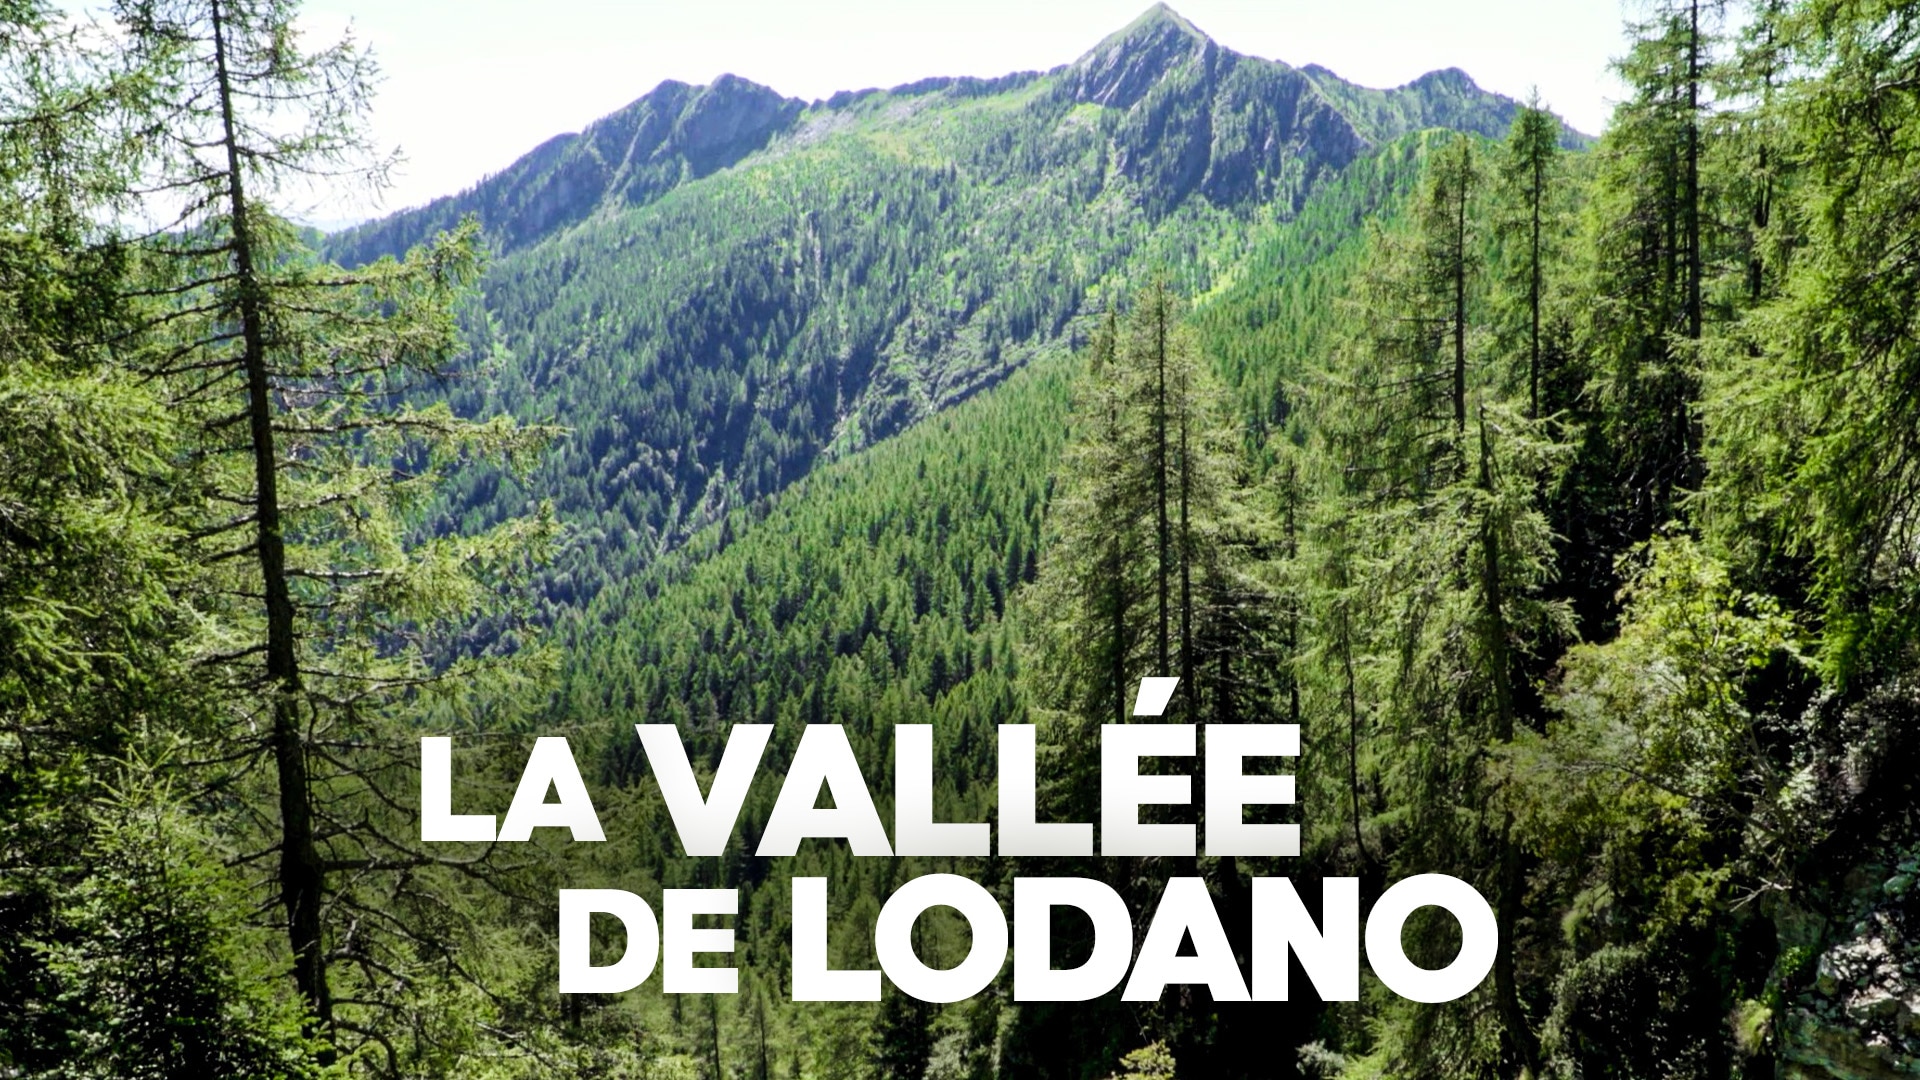 La vallée de Lodano